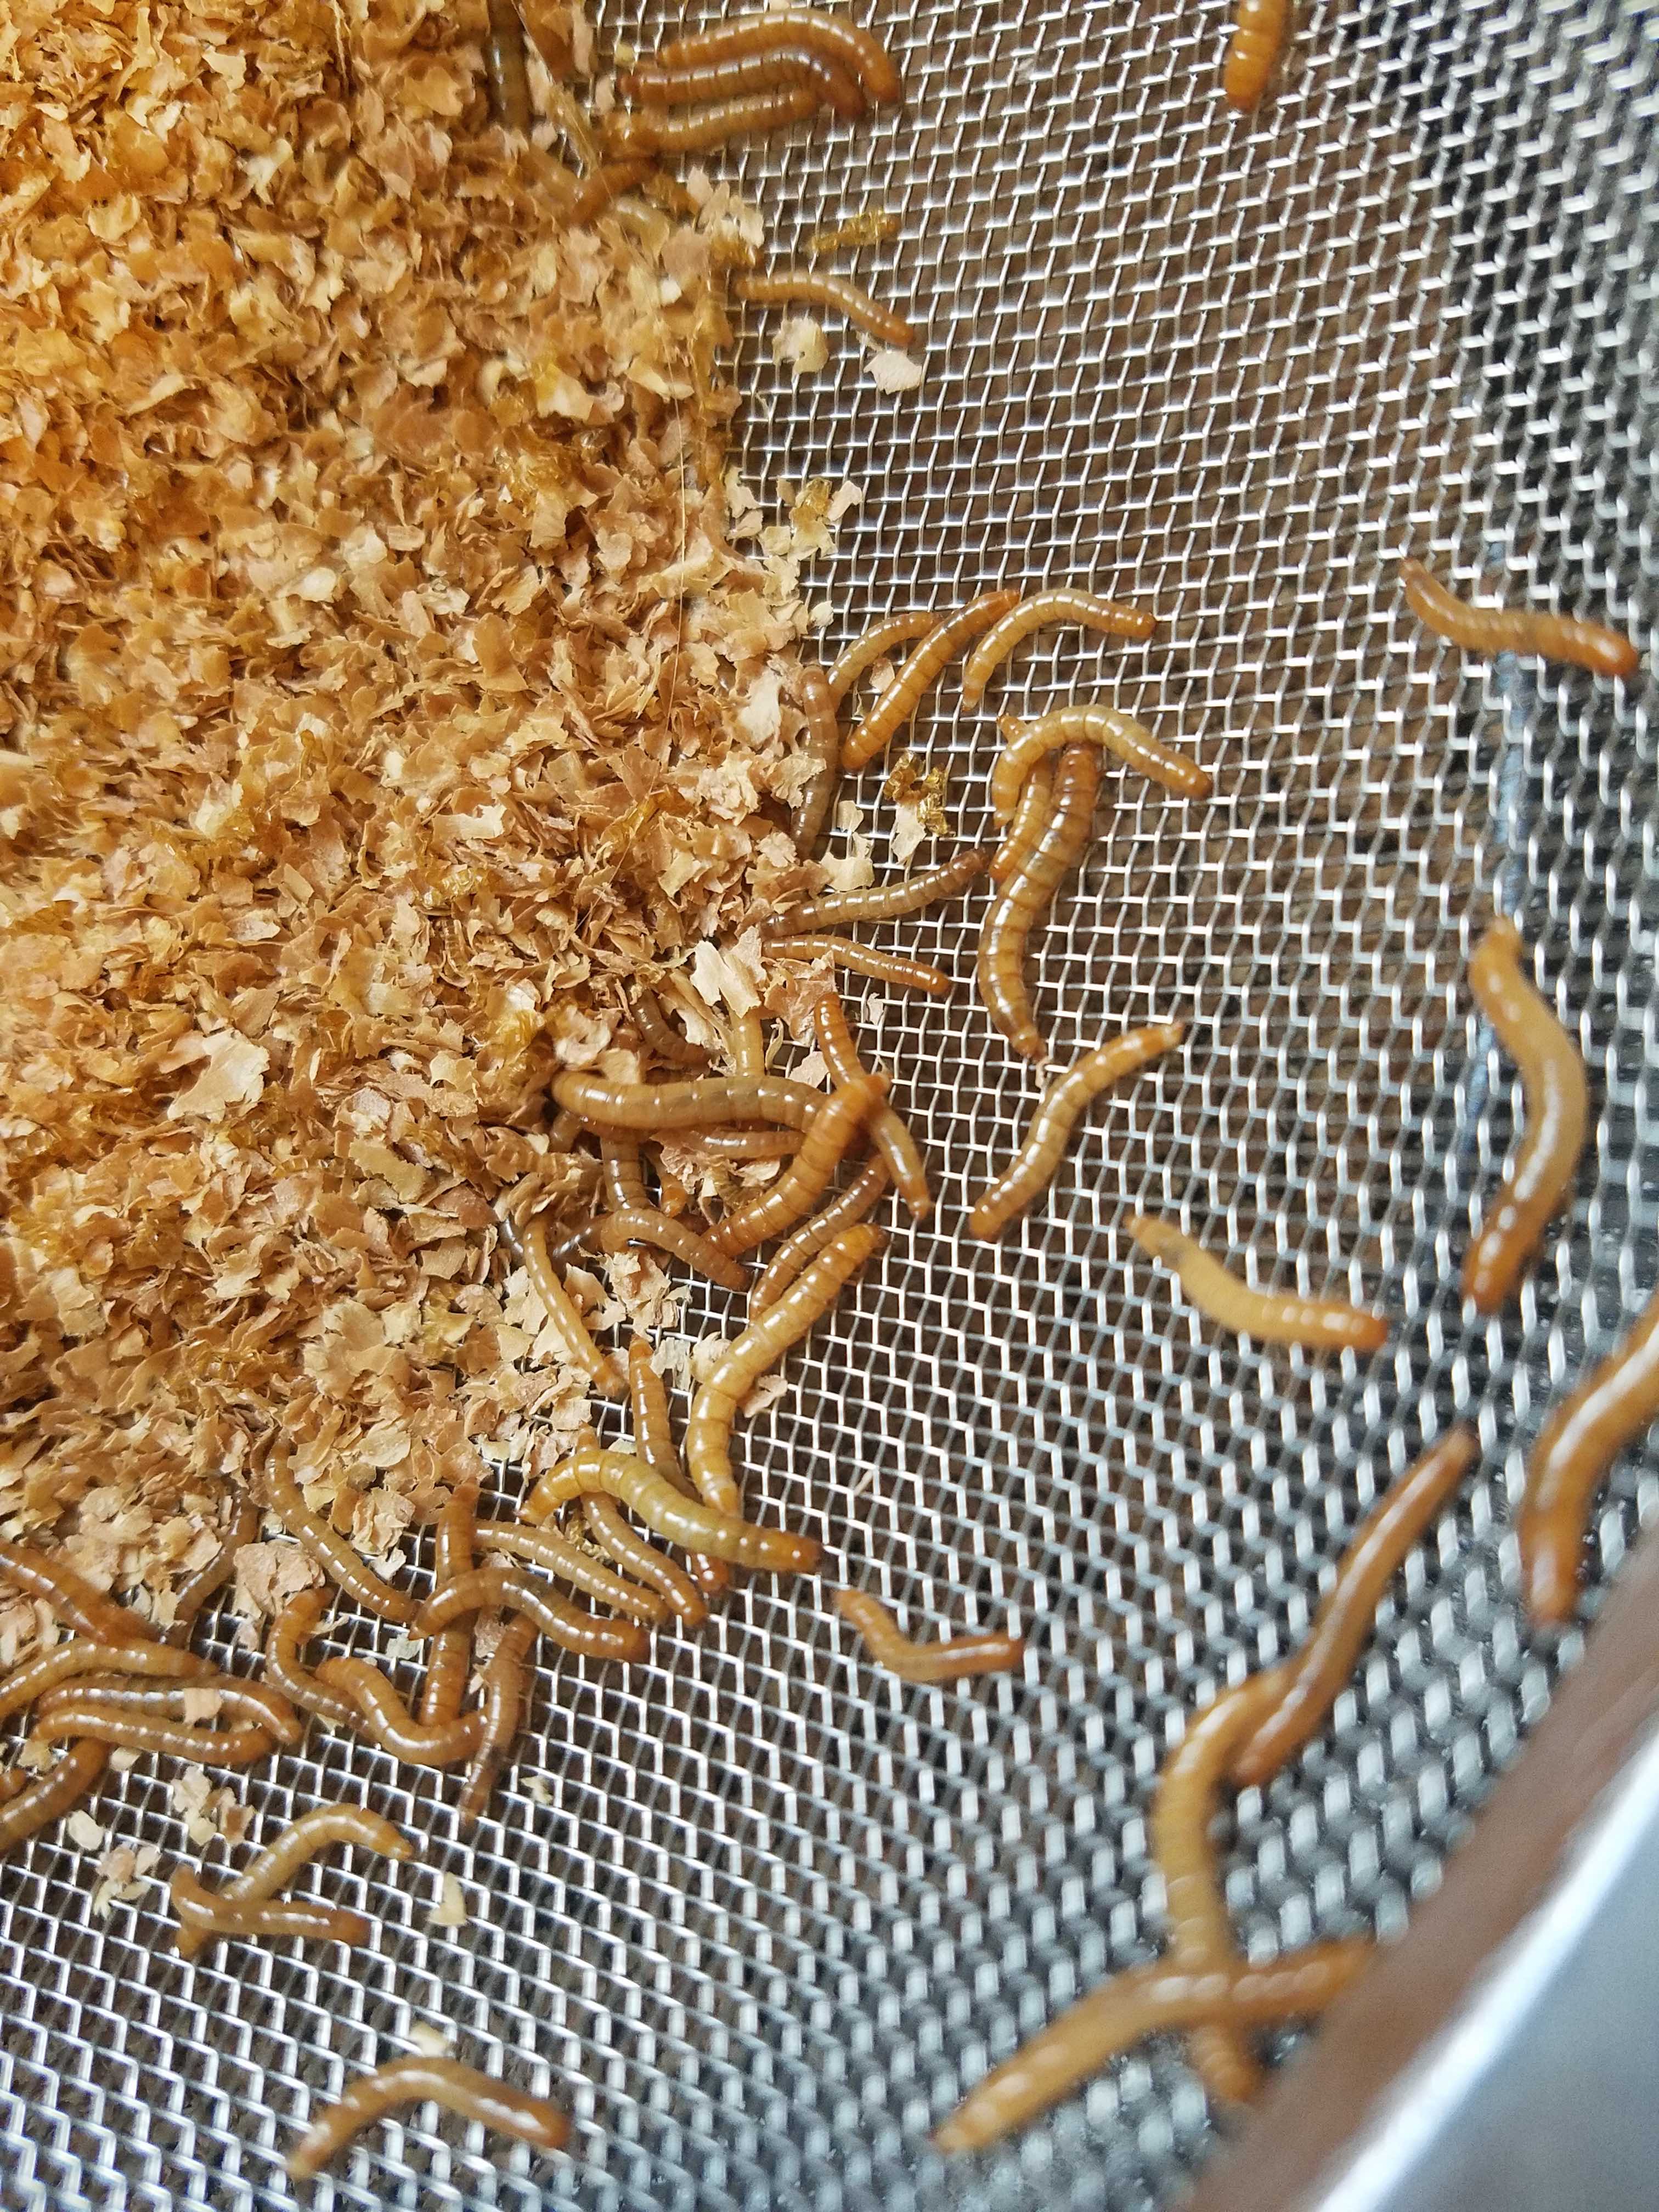 I Got Worms